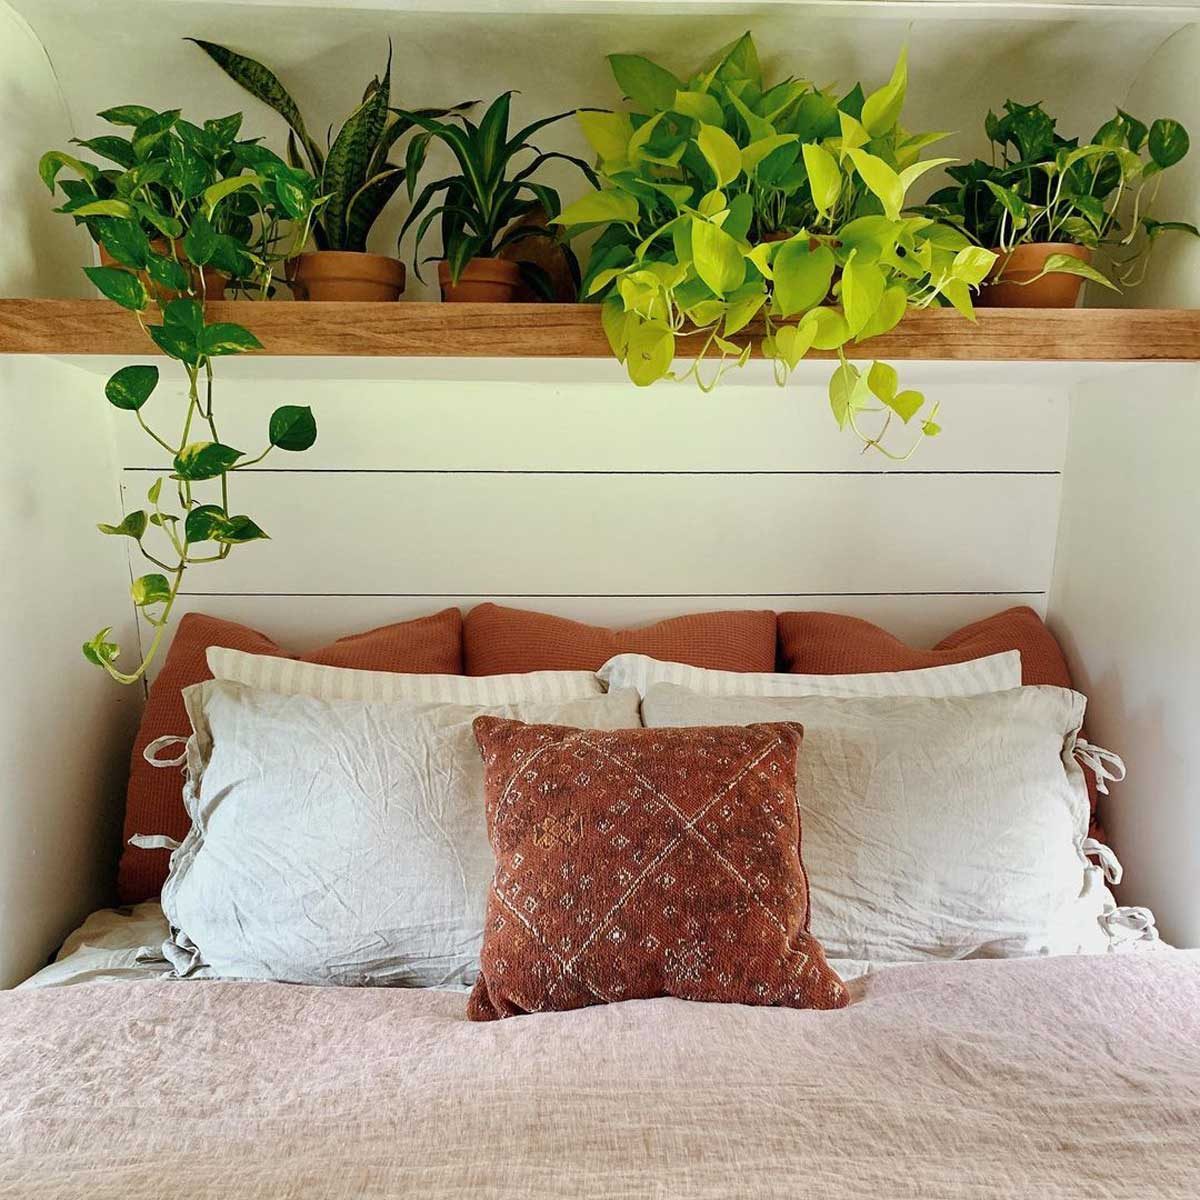 Plant-tastic bedroom